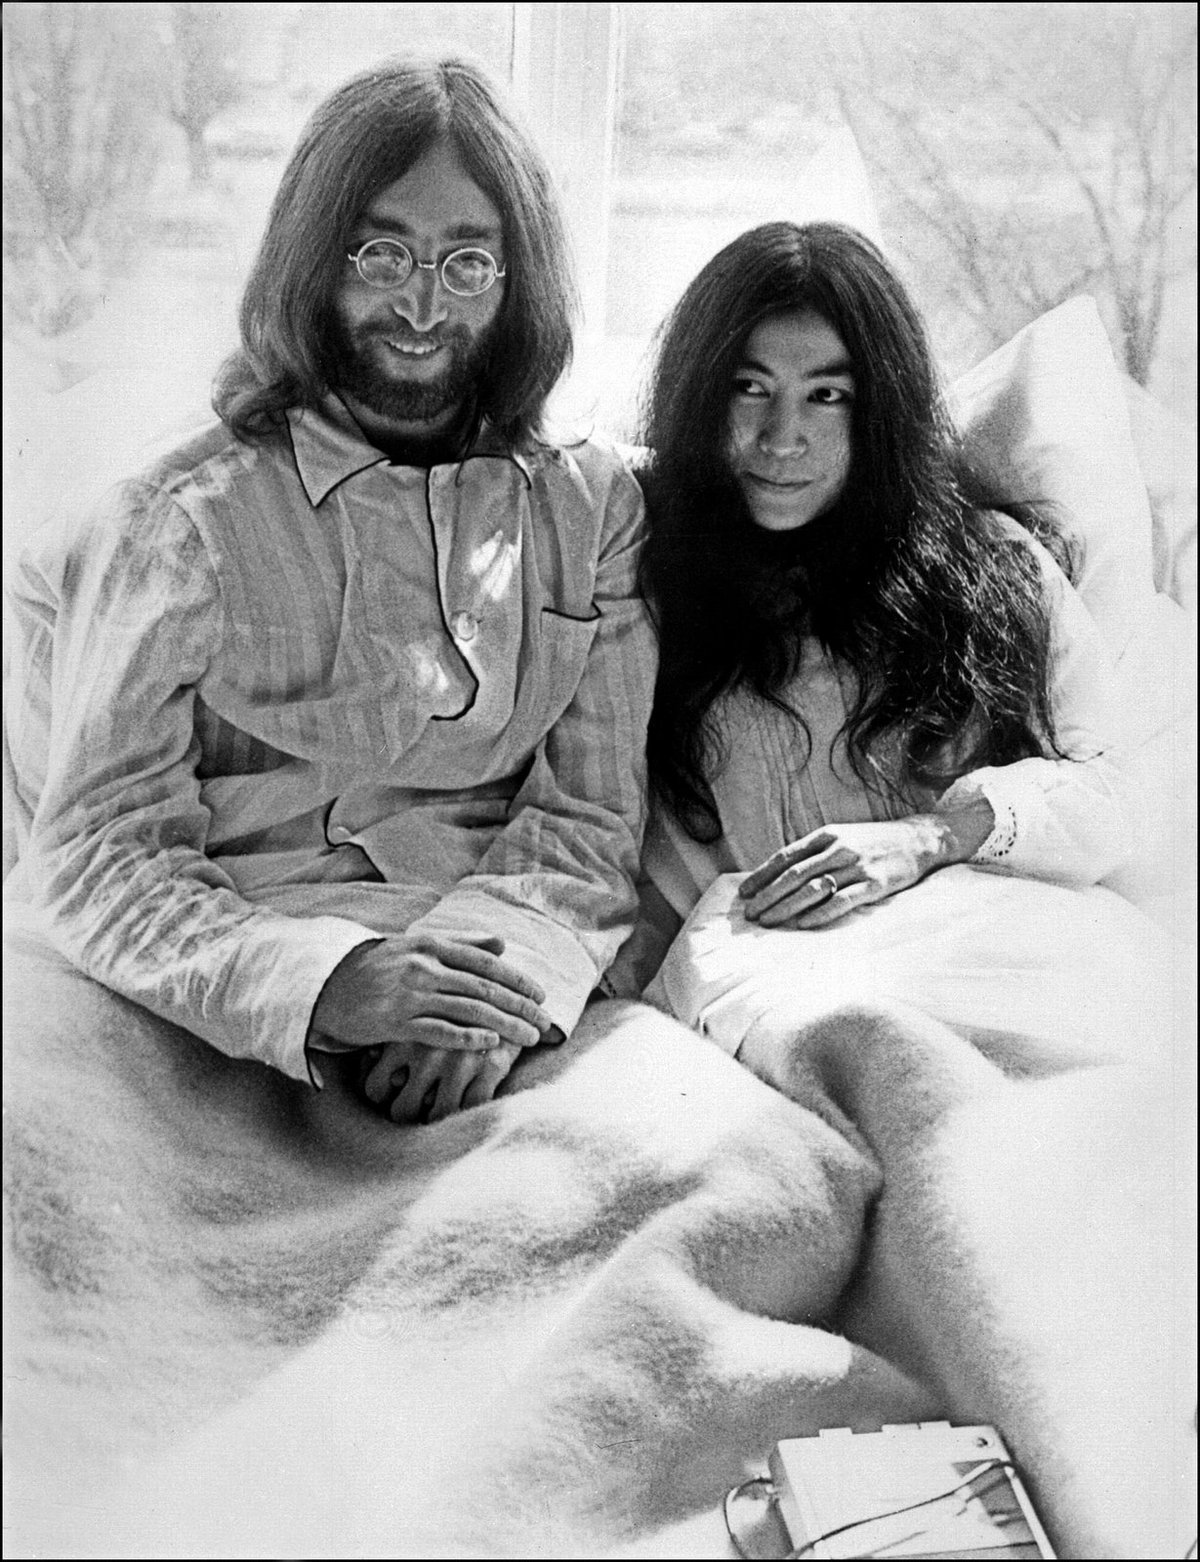 1969: Novomanželé strávili osm dní v posteli a vzývali mír.